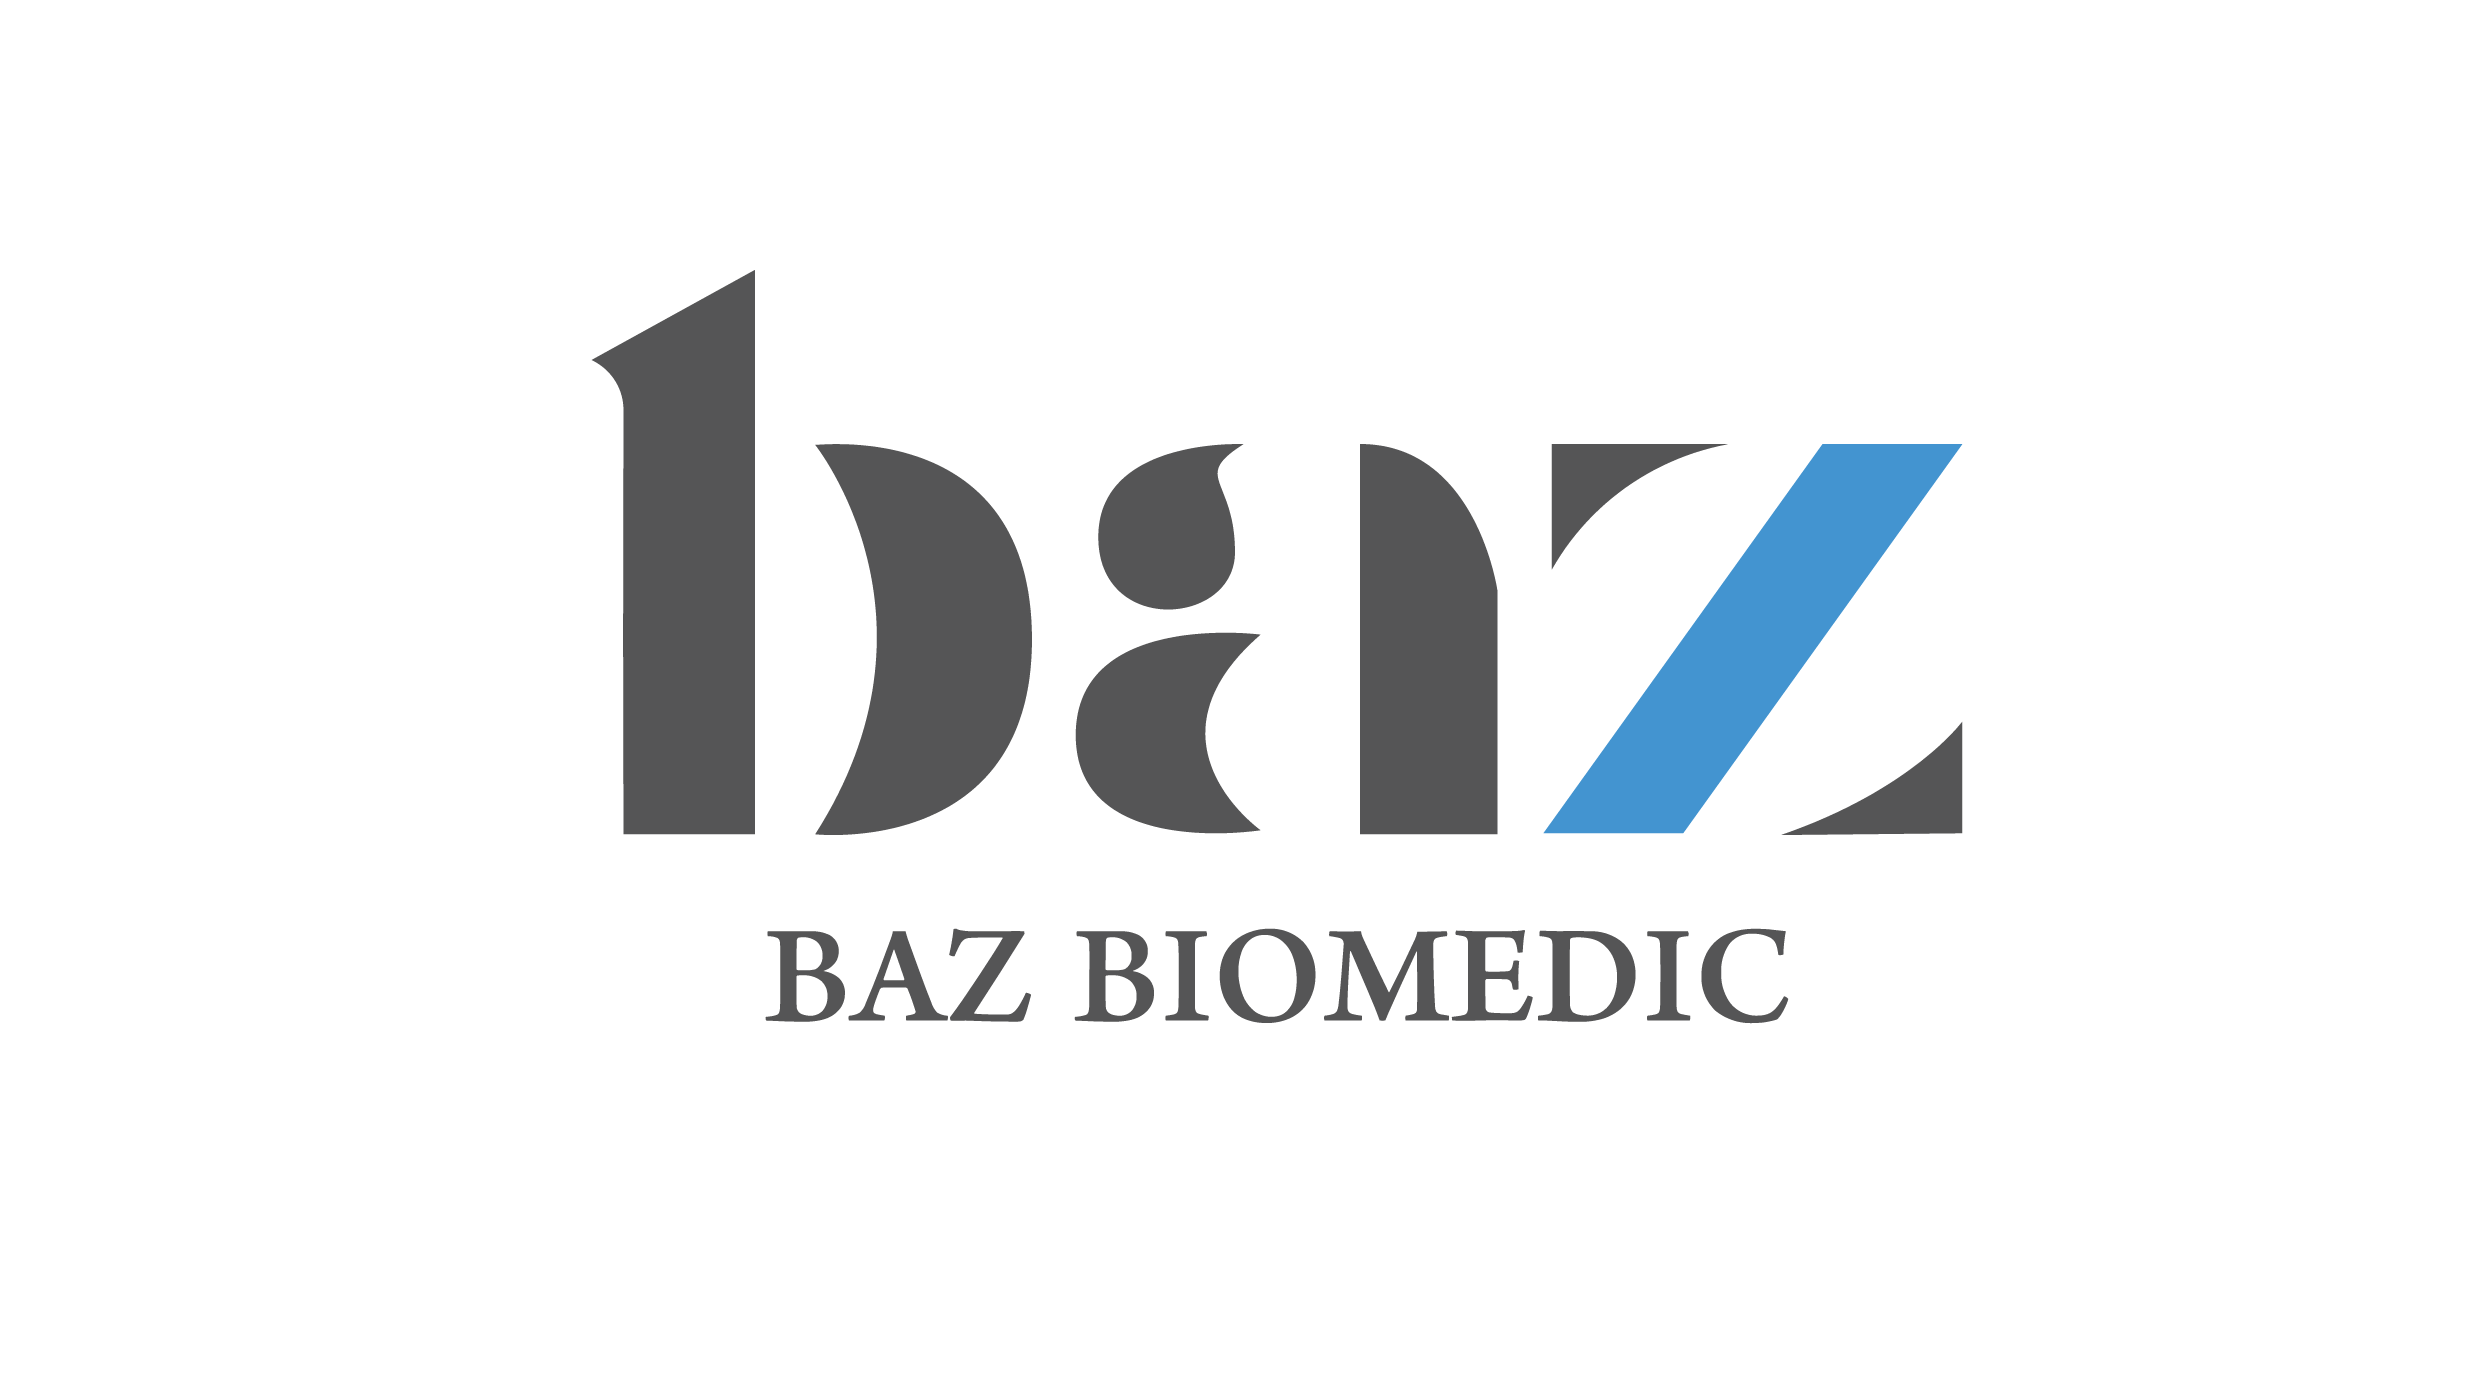 3.1 Baz Biomedic